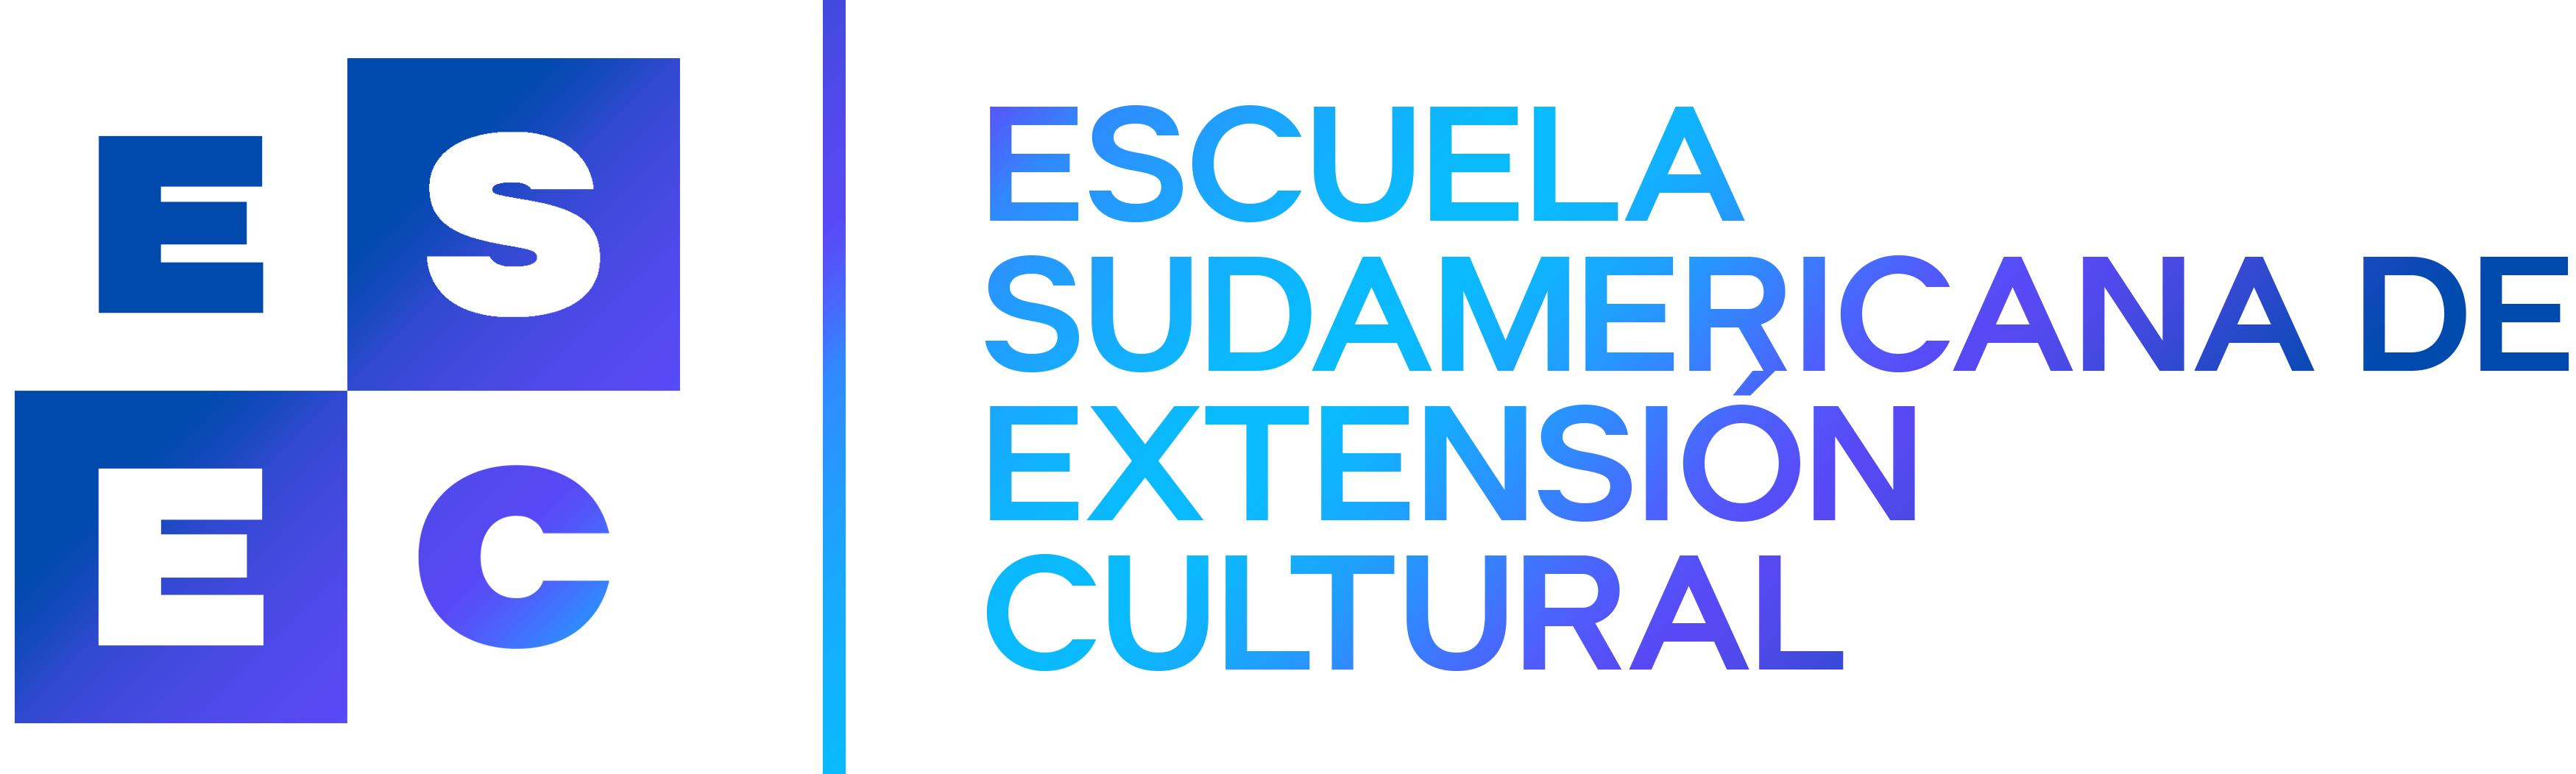 Escuela Sudamericana de Extensión Cultural para Perú